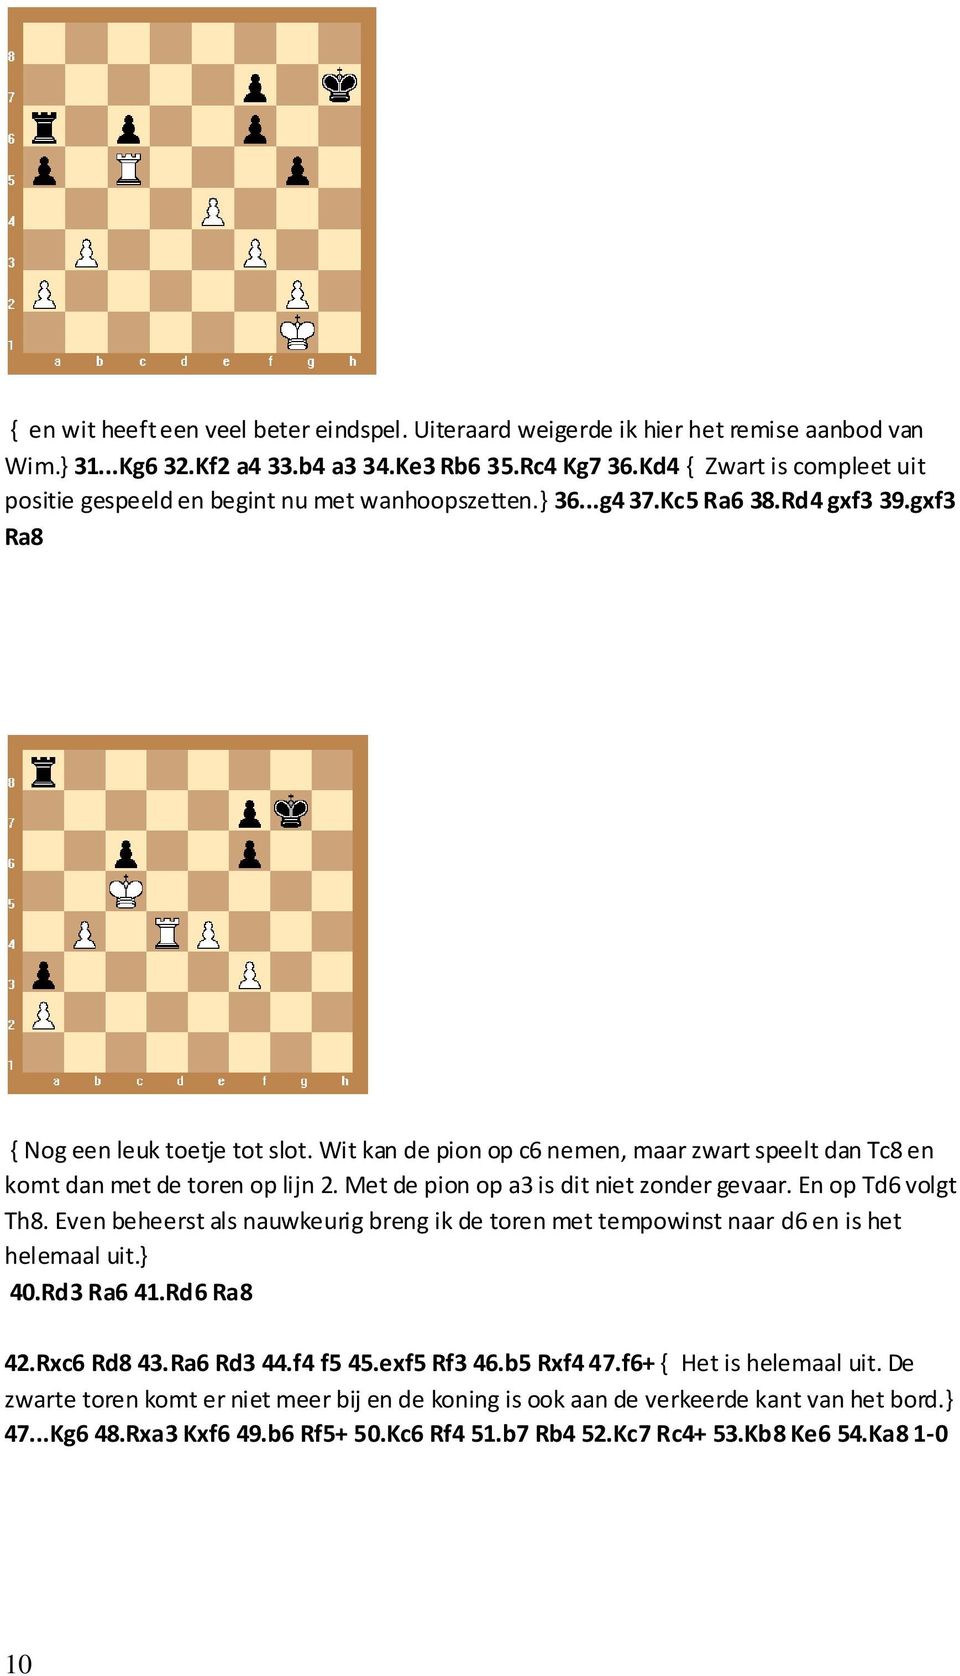 Wit kan de pion op c6 nemen, maar zwart speelt dan Tc8 en komt dan met de toren op lijn 2. Met de pion op a3 is dit niet zonder gevaar. En op Td6 volgt Th8.